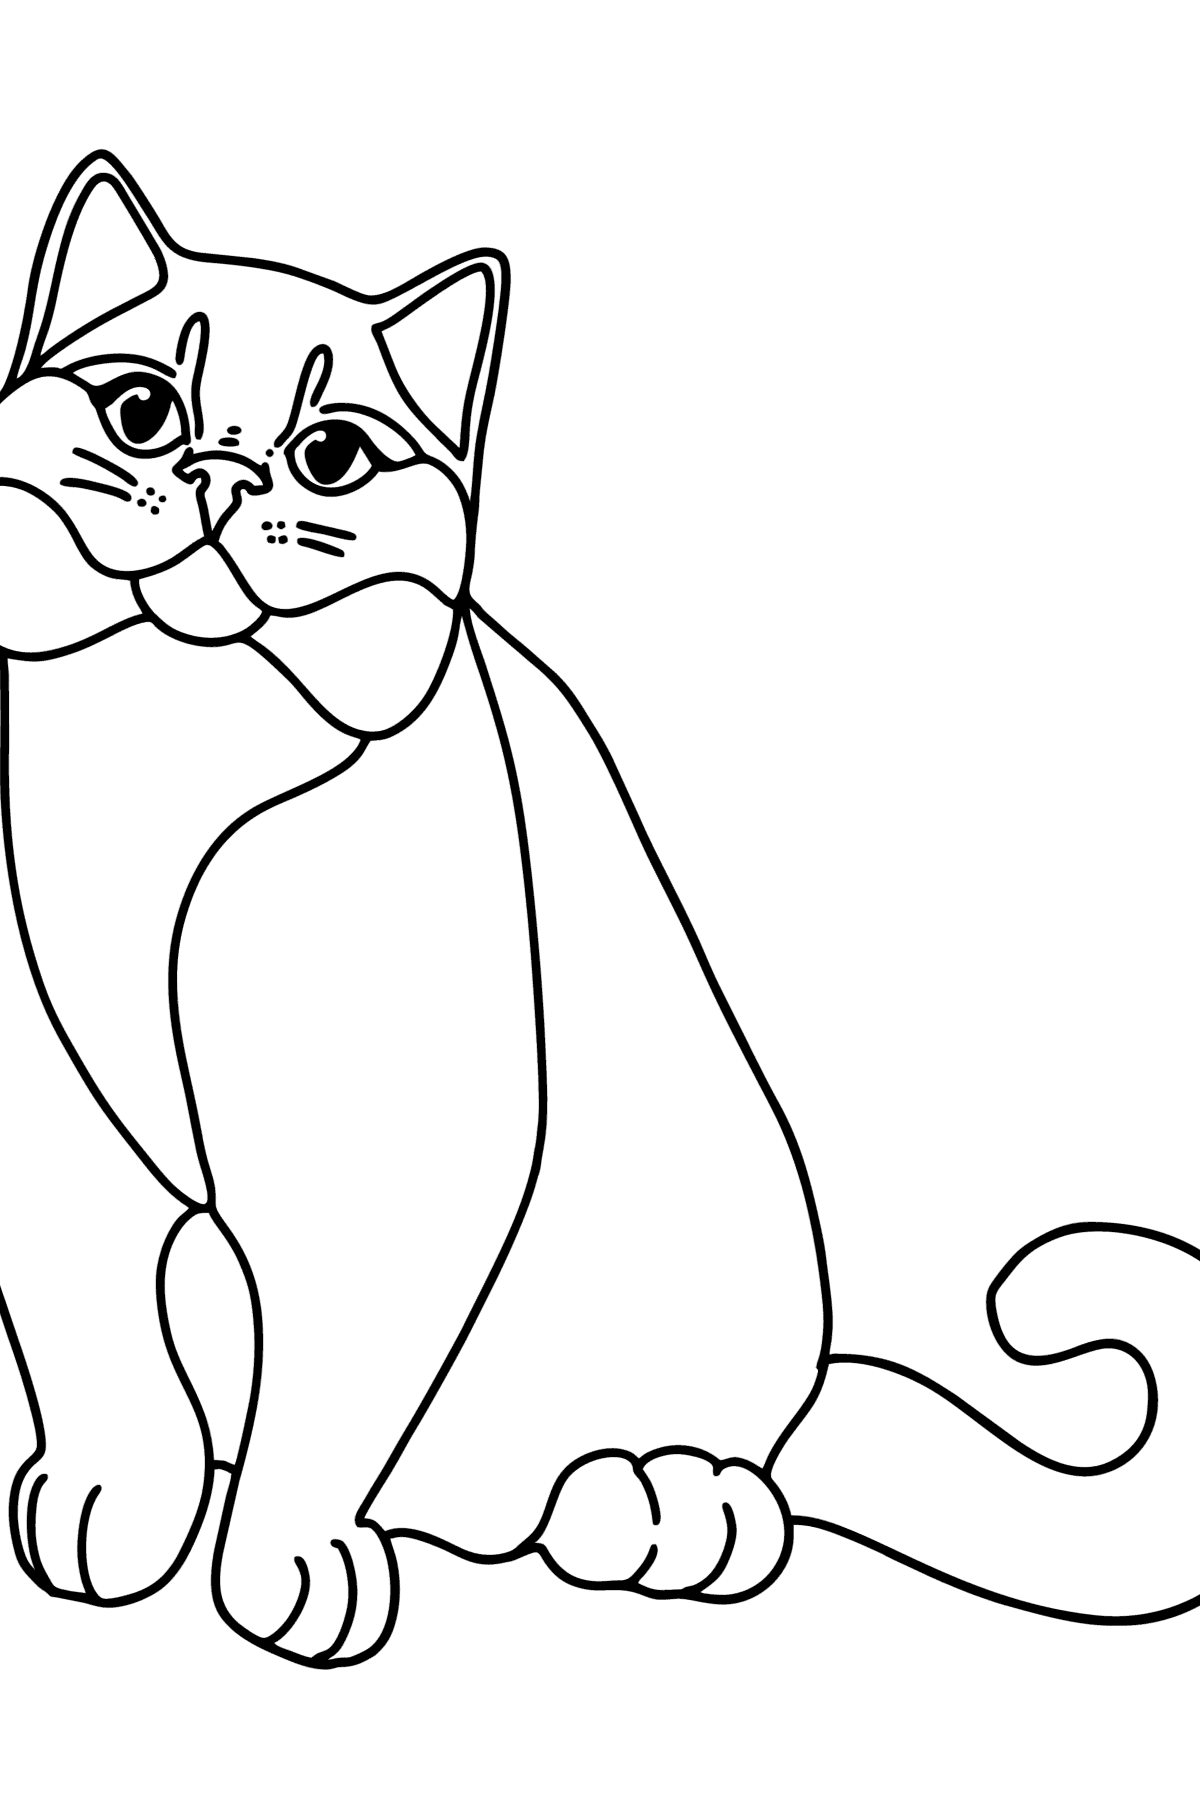 Boyama sayfası İngiliz kedi - Boyamalar çocuklar için